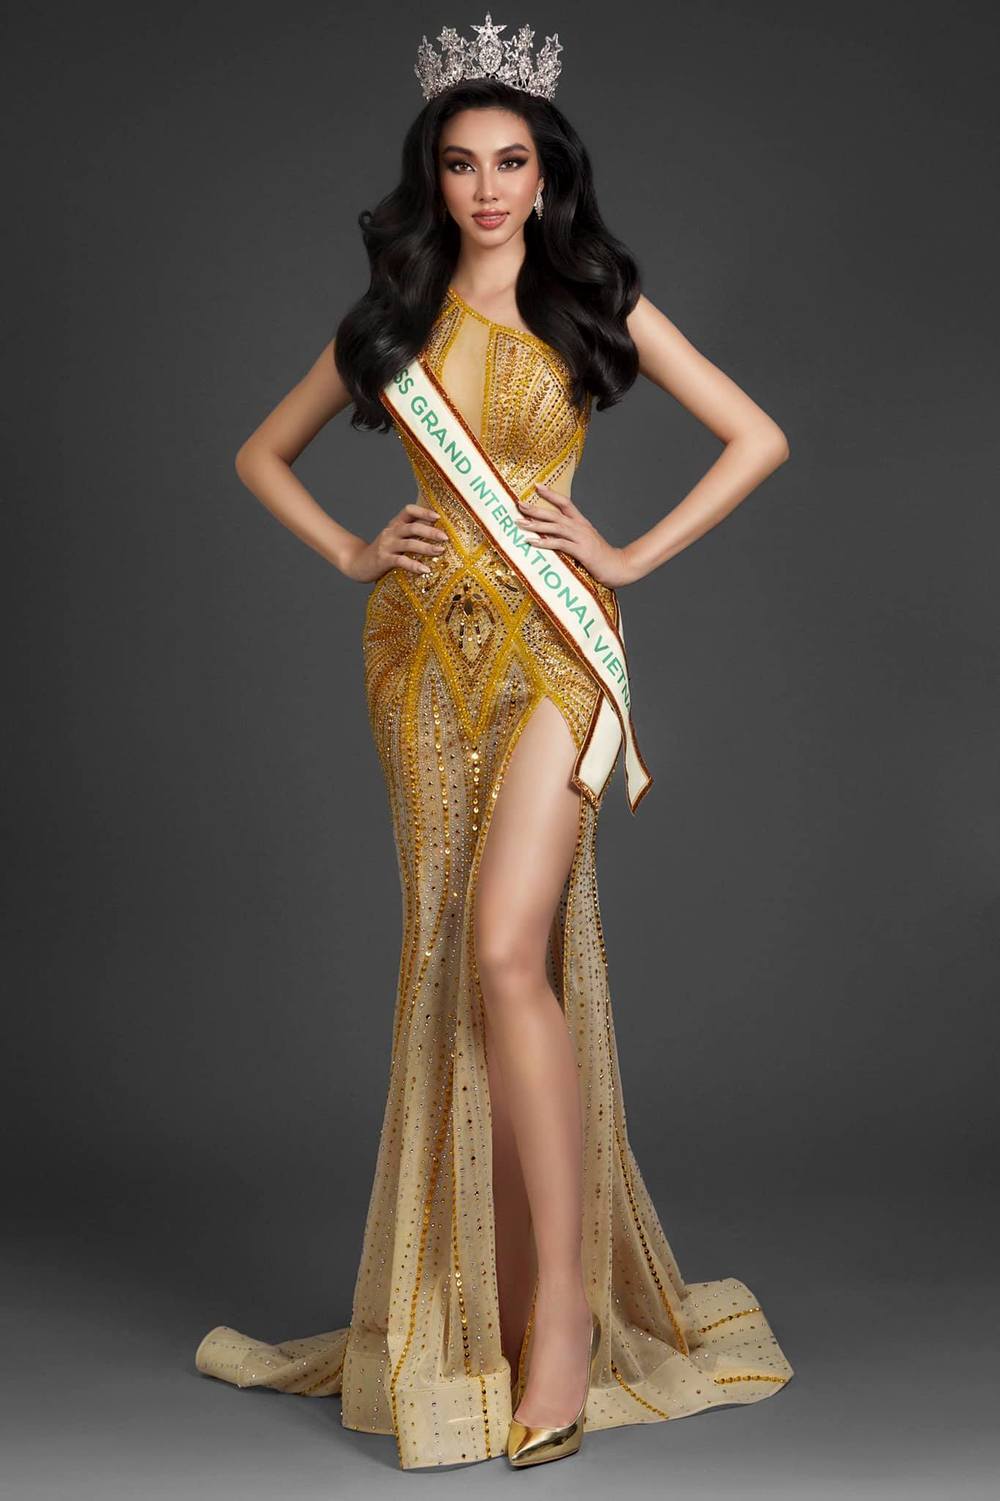  
Người đẹp Sài thành chuẩn bị chu đáo khi đến với Miss Grand International 2021. (Ảnh: Facebook Nguyễn Thúc Thùy Tiên)